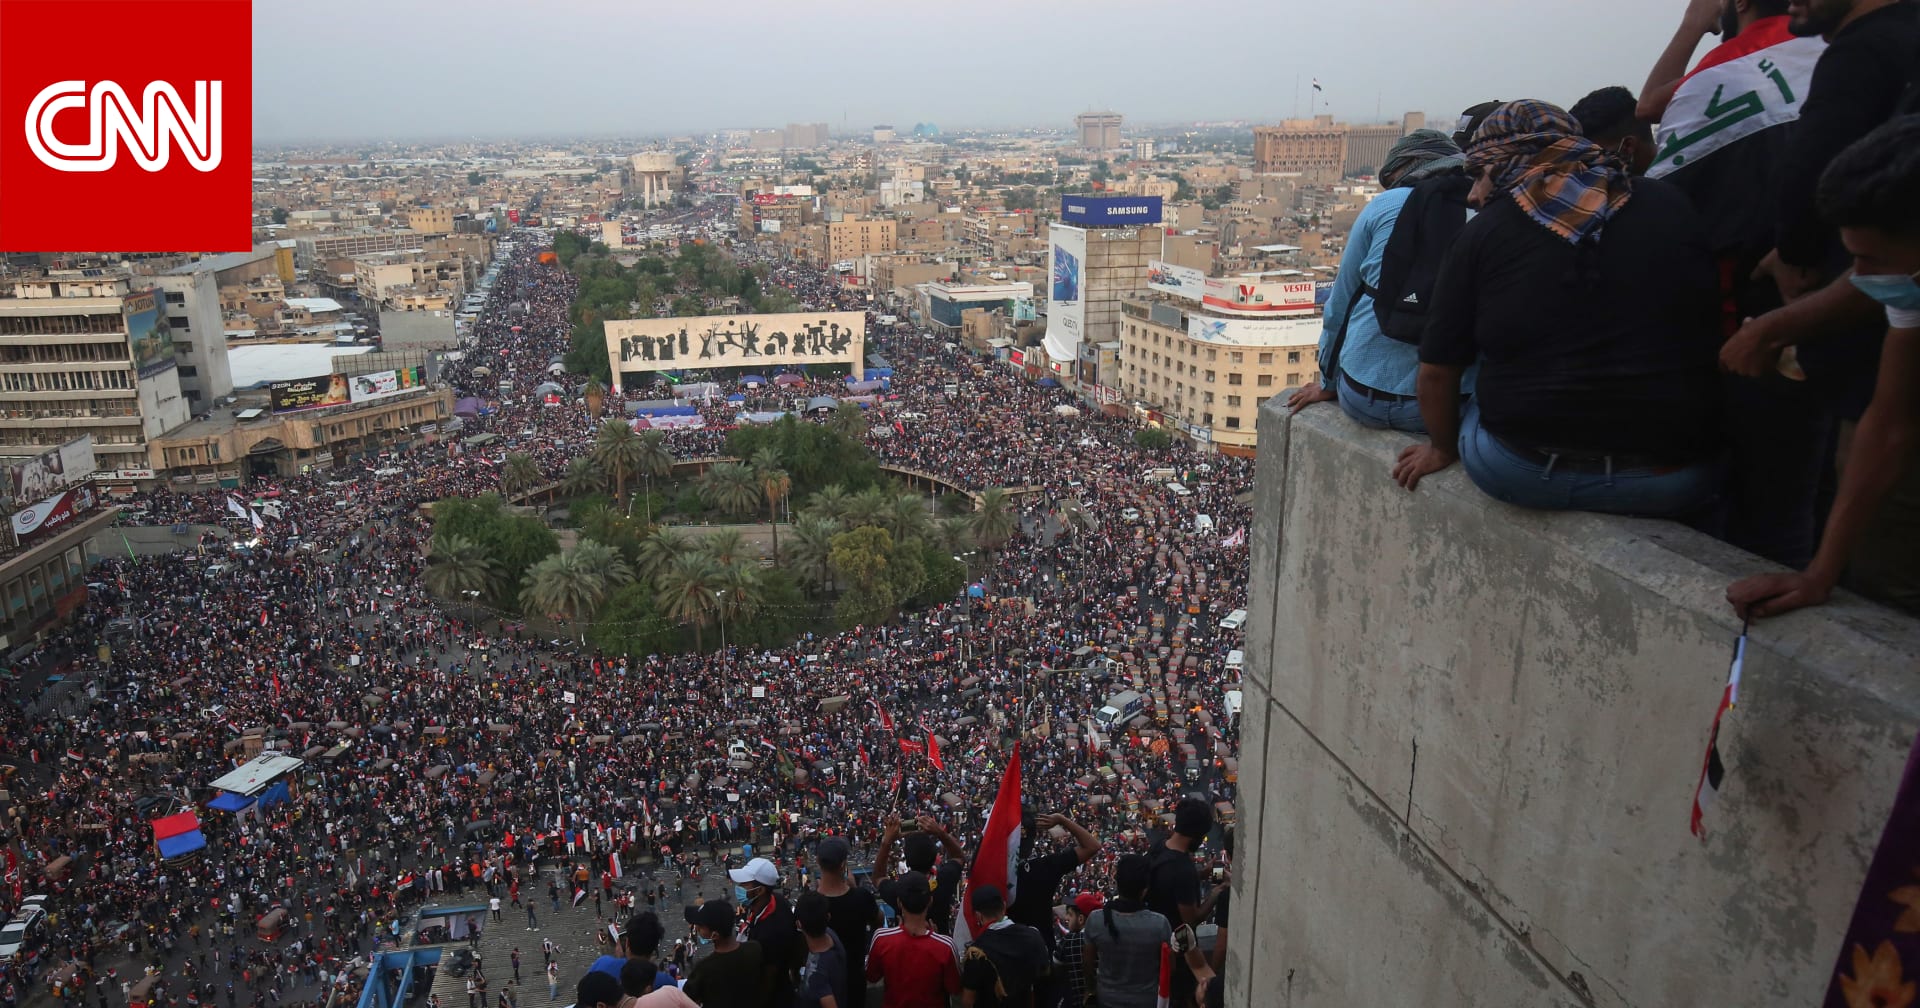 264 قتيلًا وأكثر من 12 ألف مصاب منذ بدء الاحتجاجات في العراق - CNN Arabic